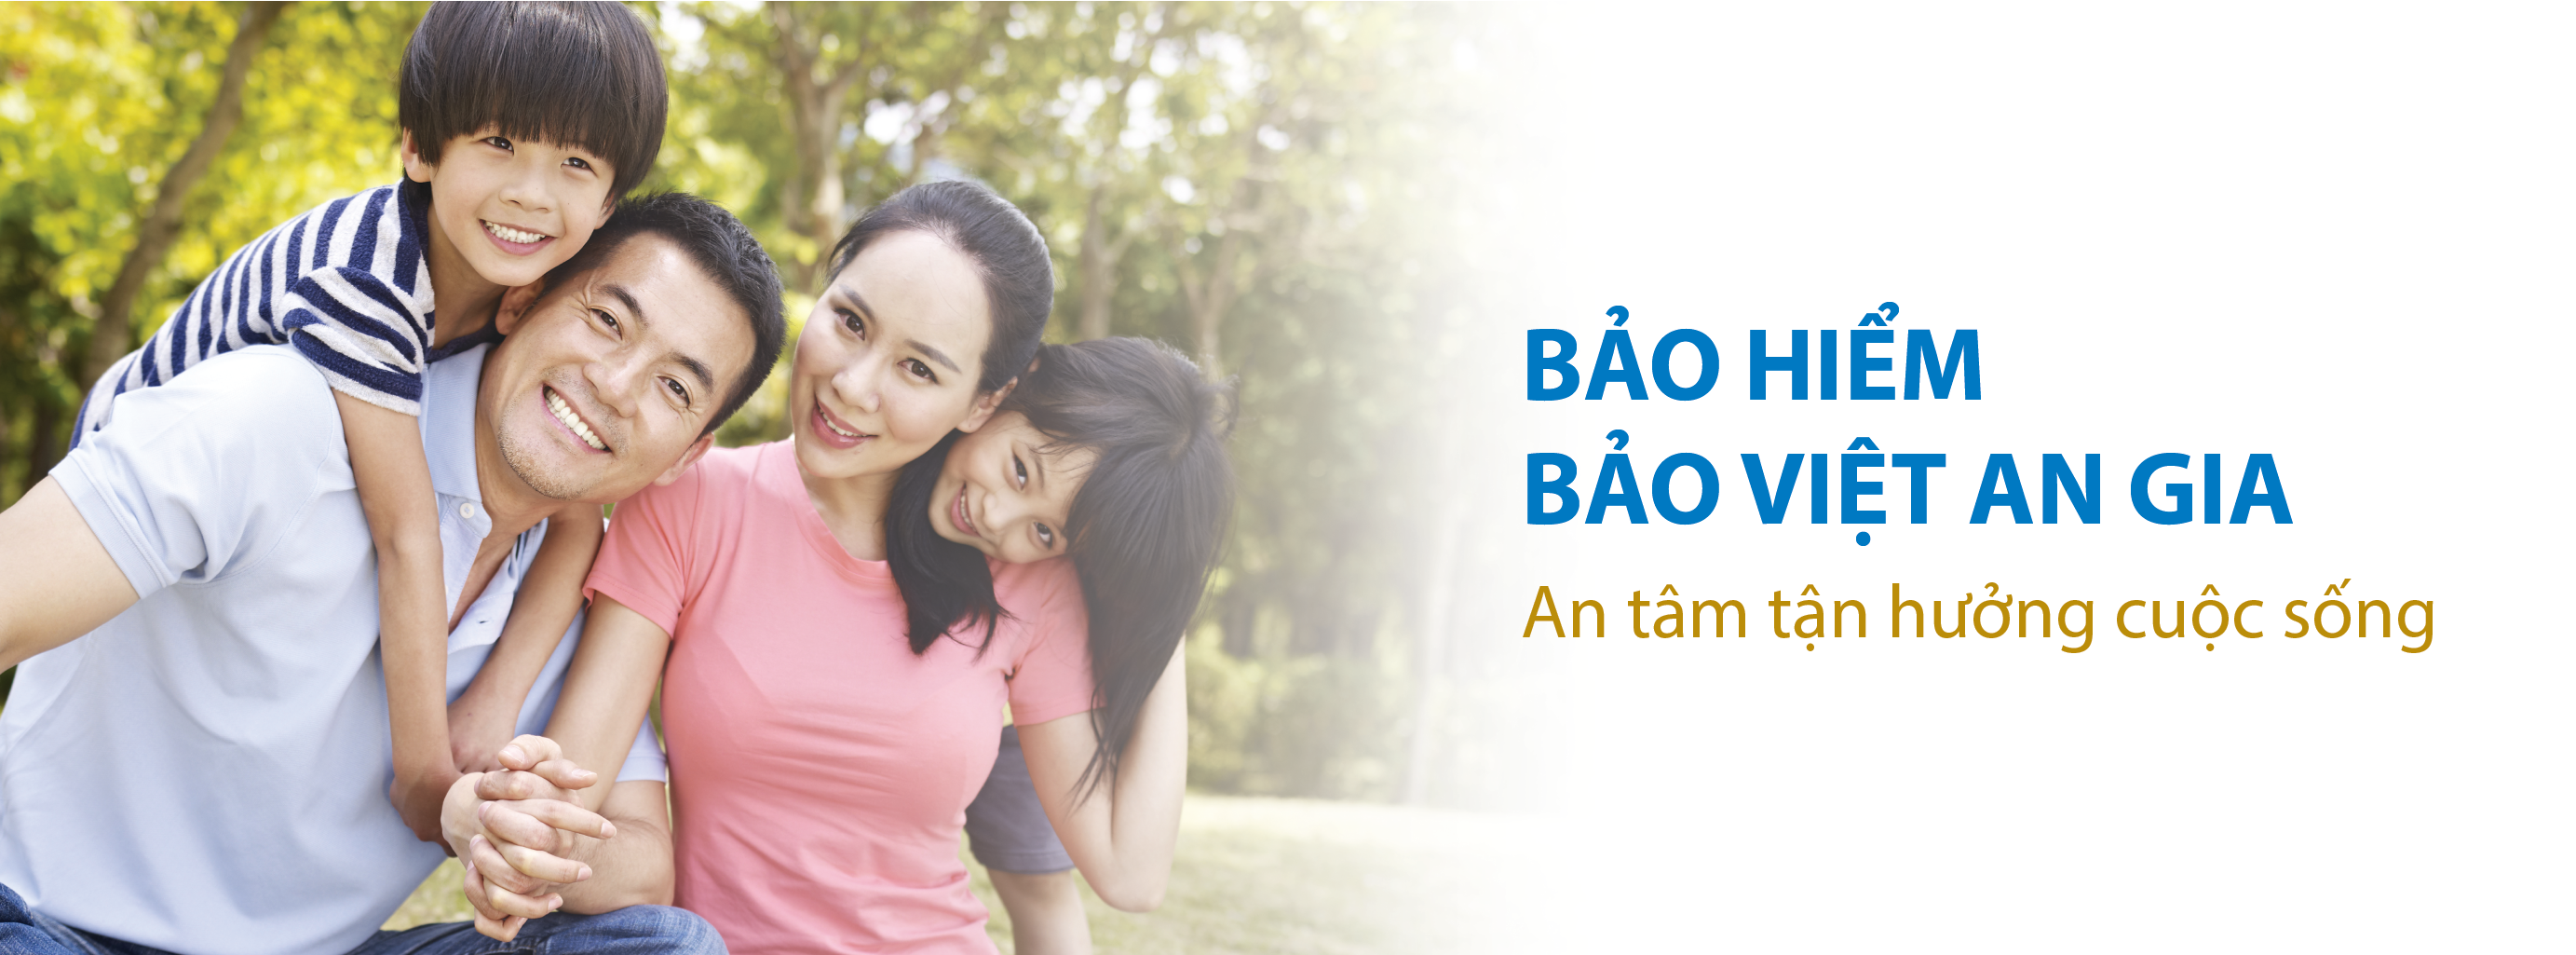 Top 5 sản phẩm bảo hiểm sức khỏe cho người nước ngoài tại Việt Nam